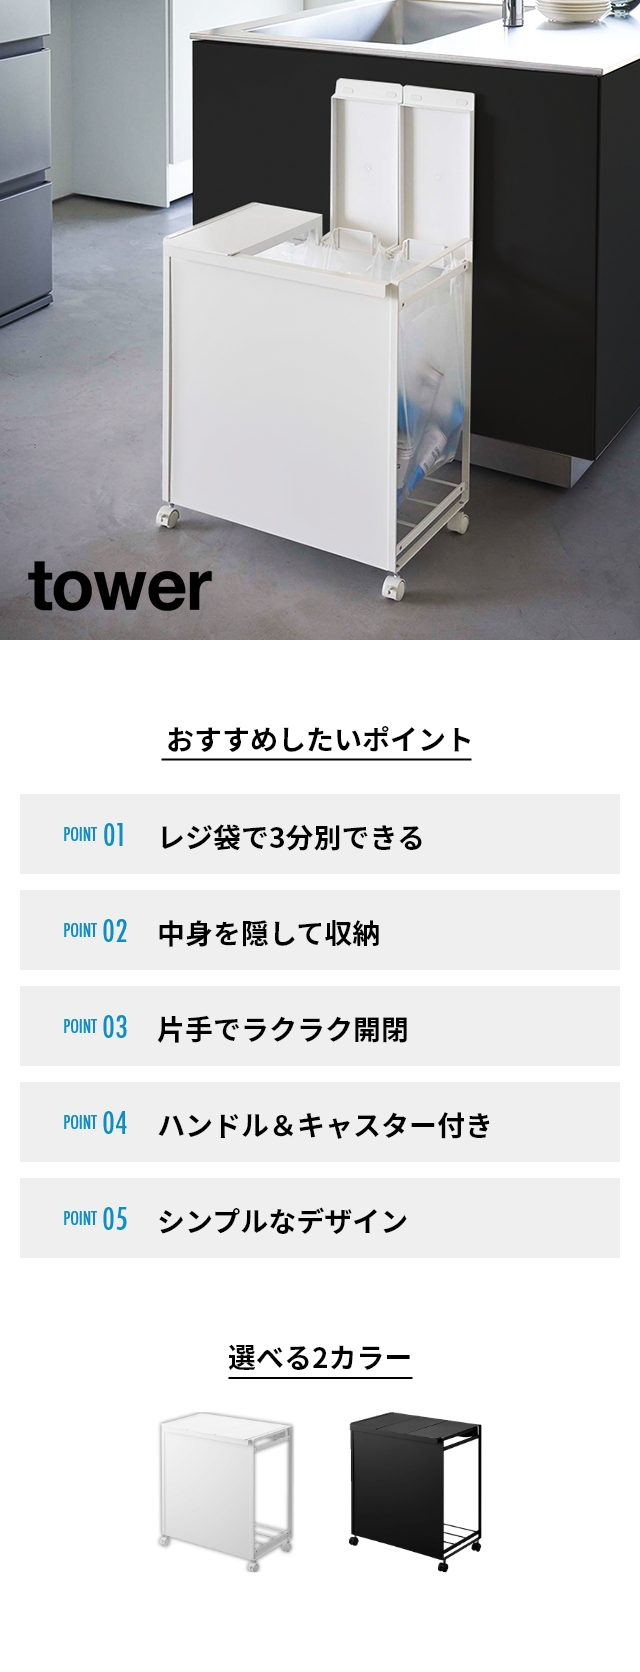 山崎実業 タワー